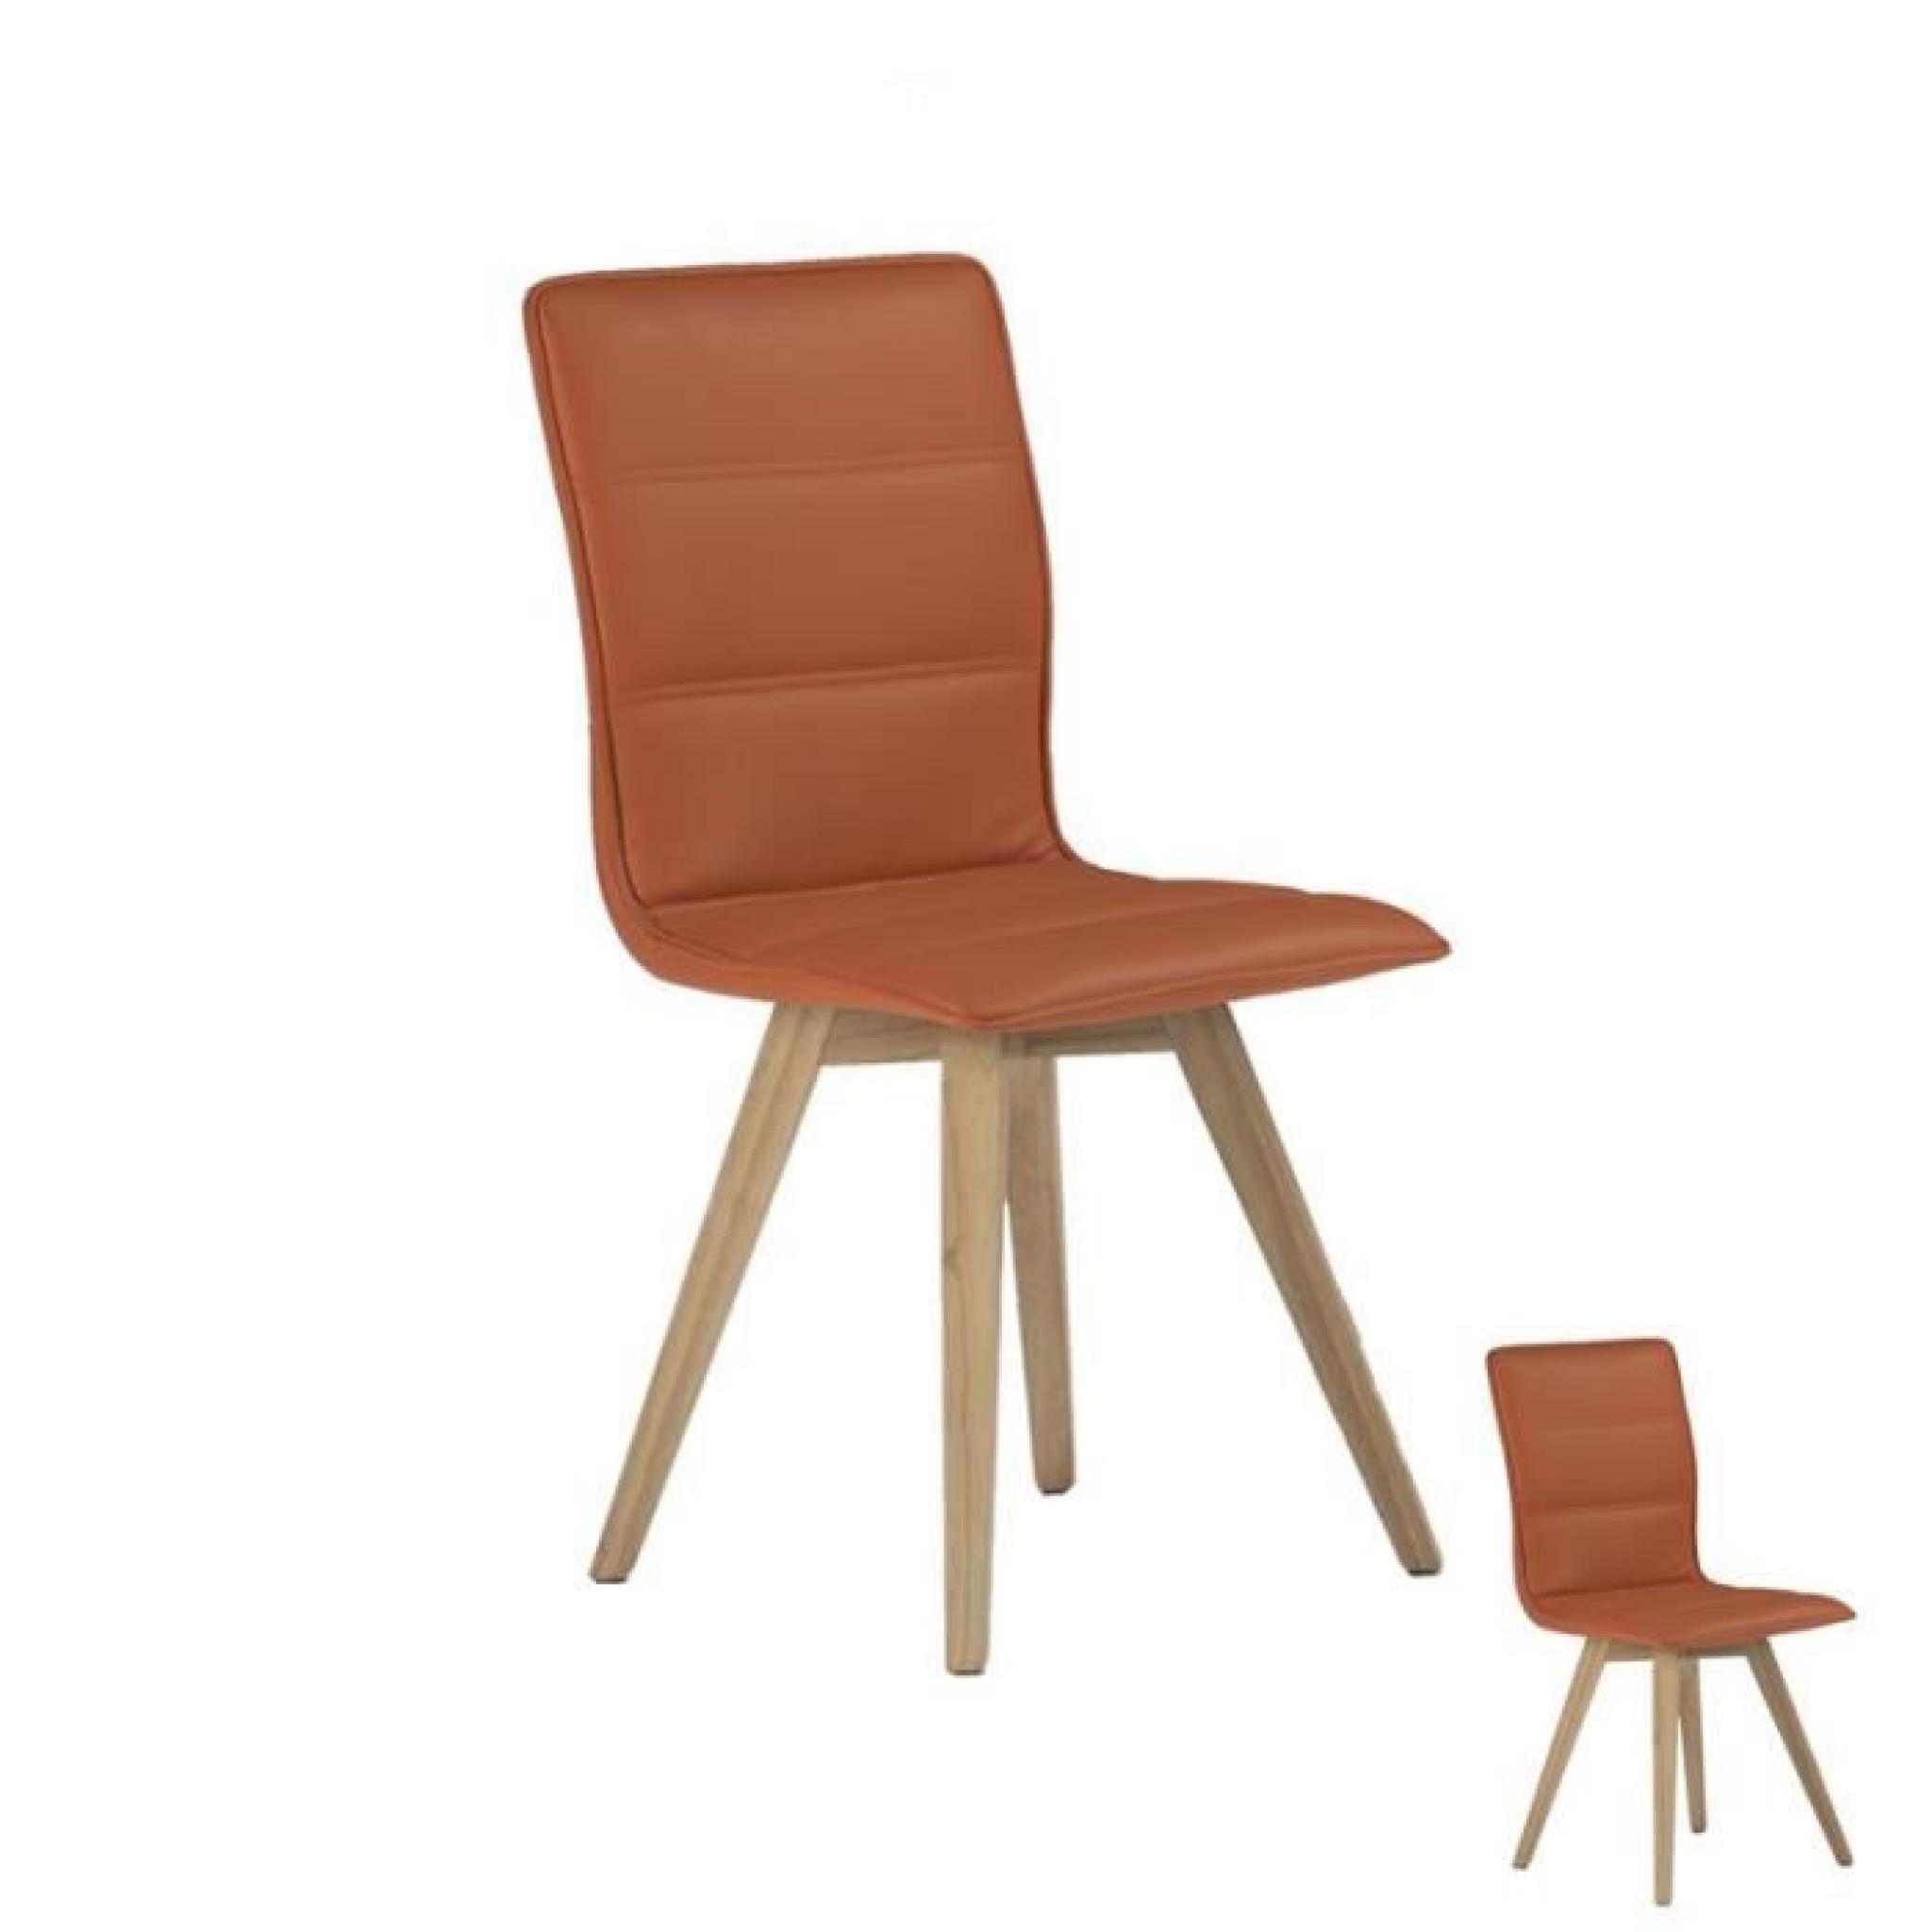 Duo de chaises simili cuir Orange - KANO - L 43 x l 53 x H 88 cm